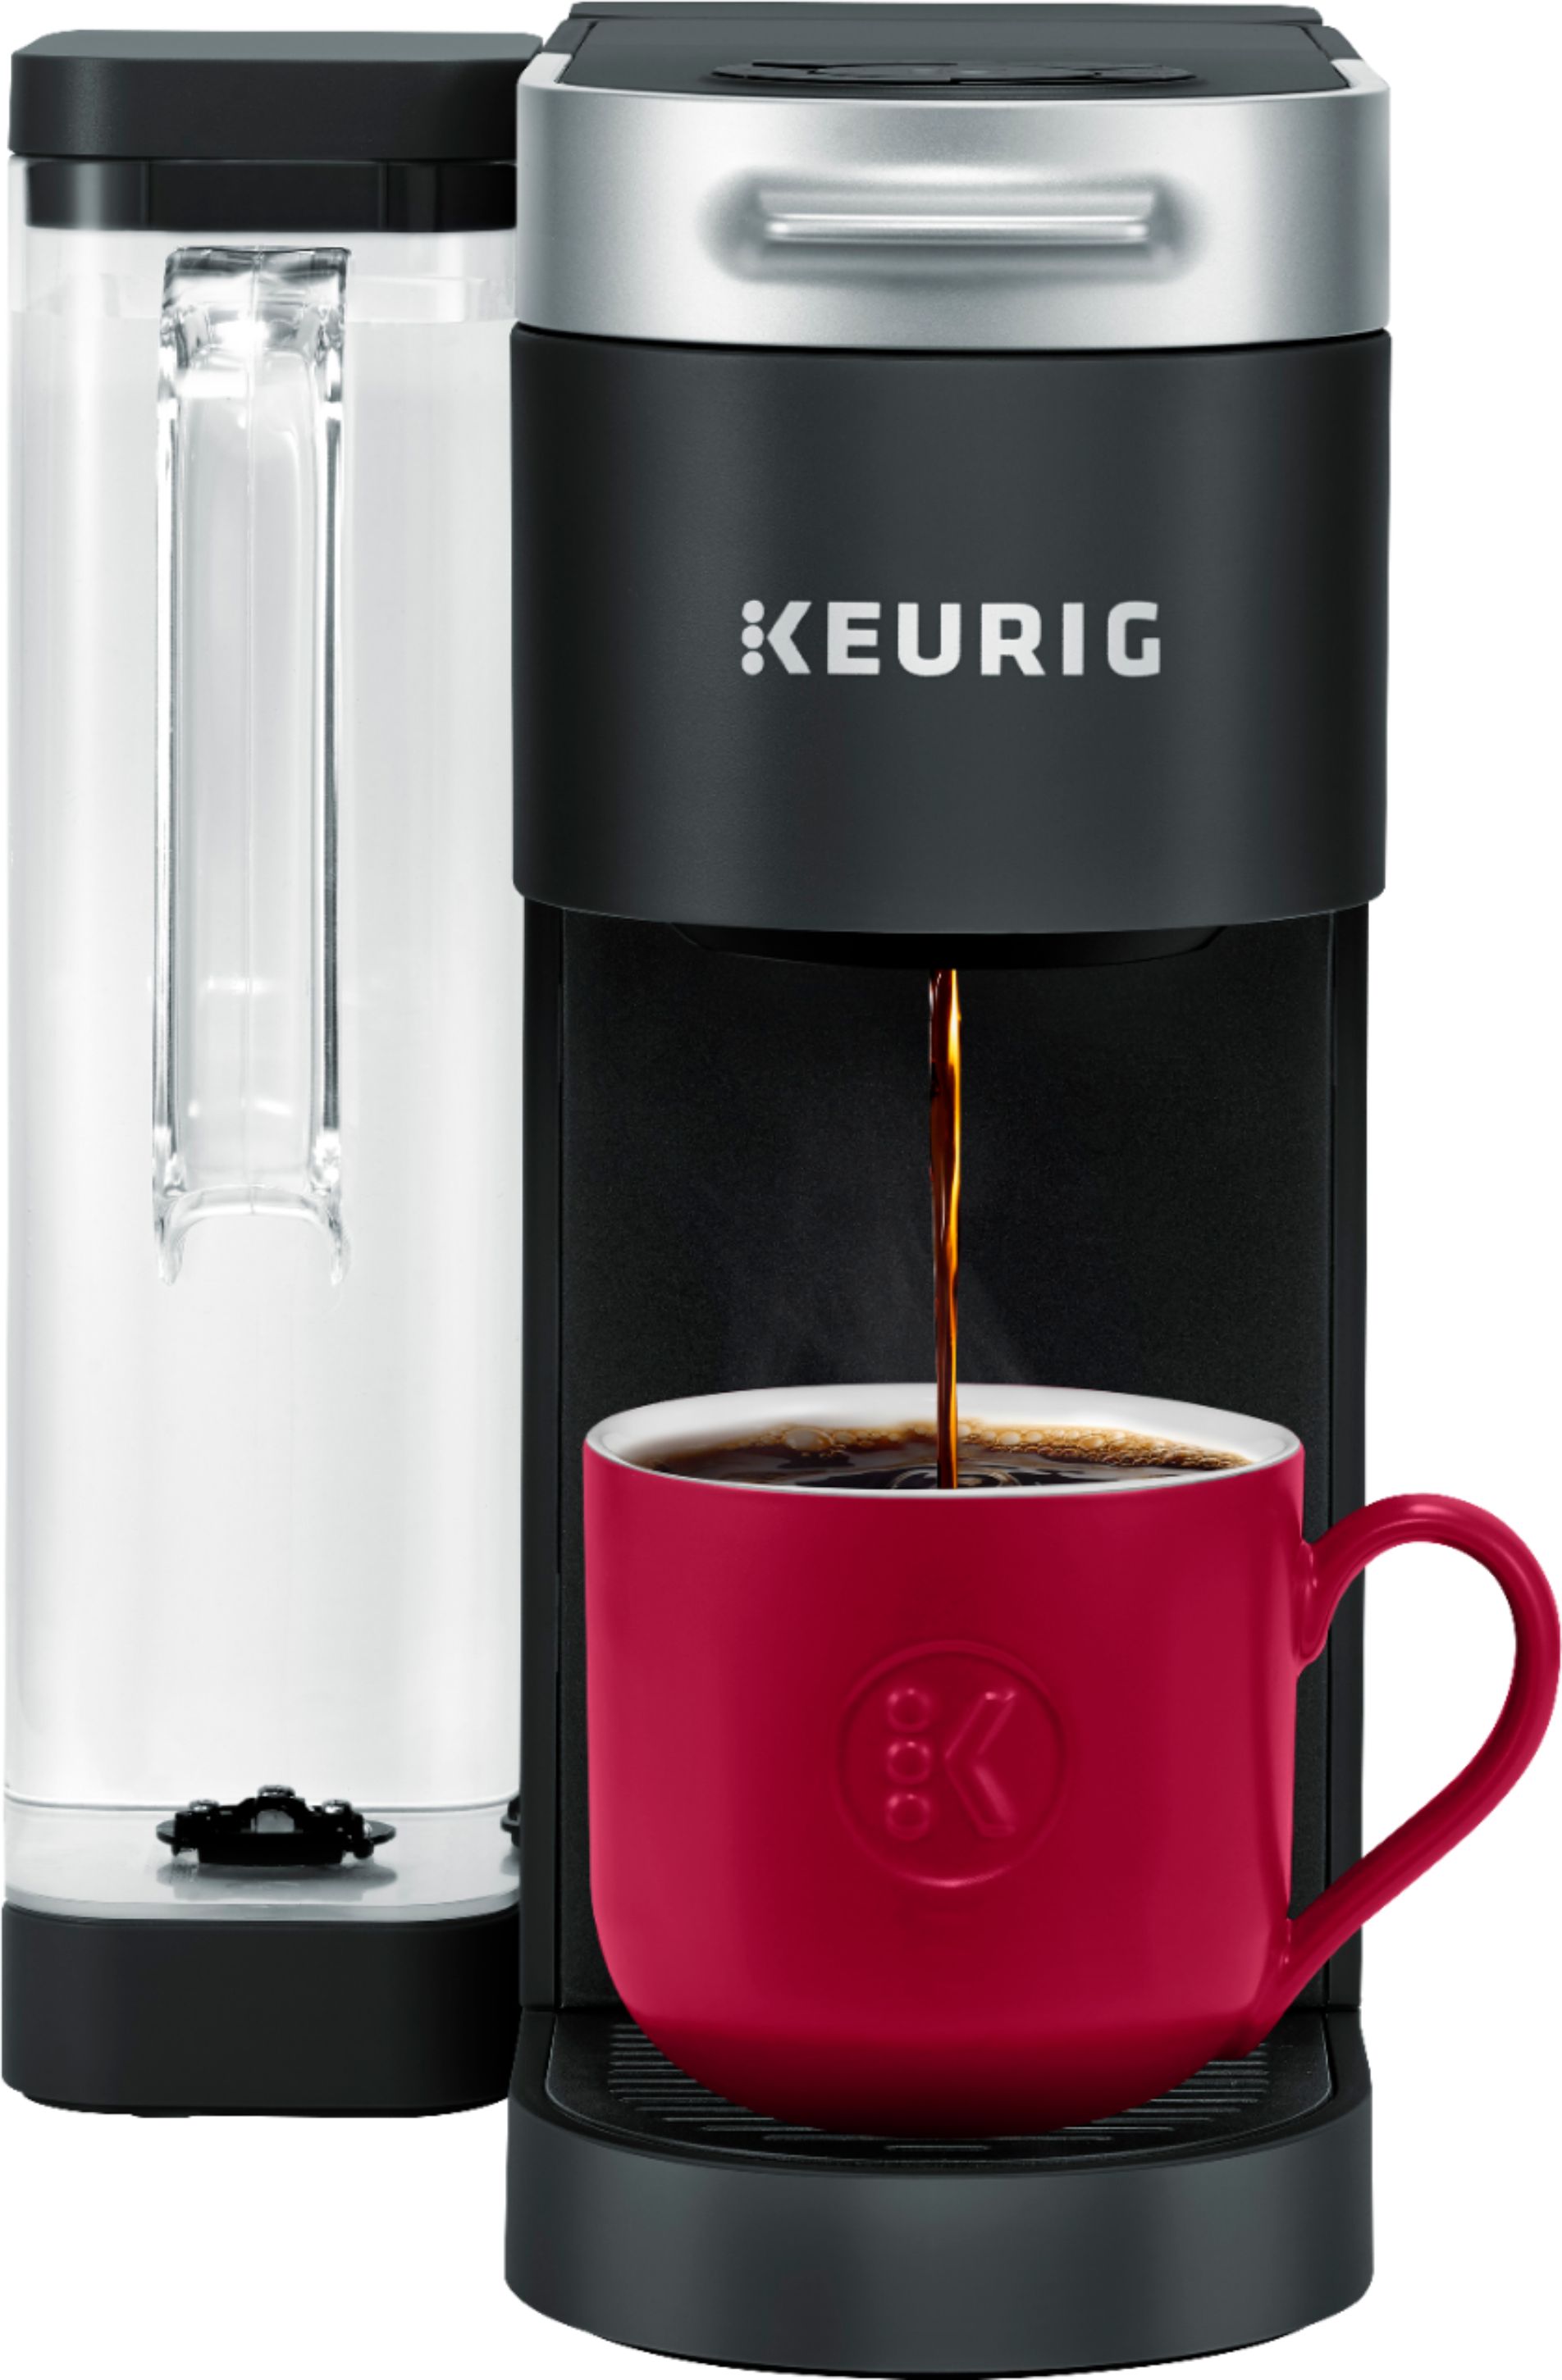 Keurig Kコンパクトコーヒーメーカー、ブラック 通販